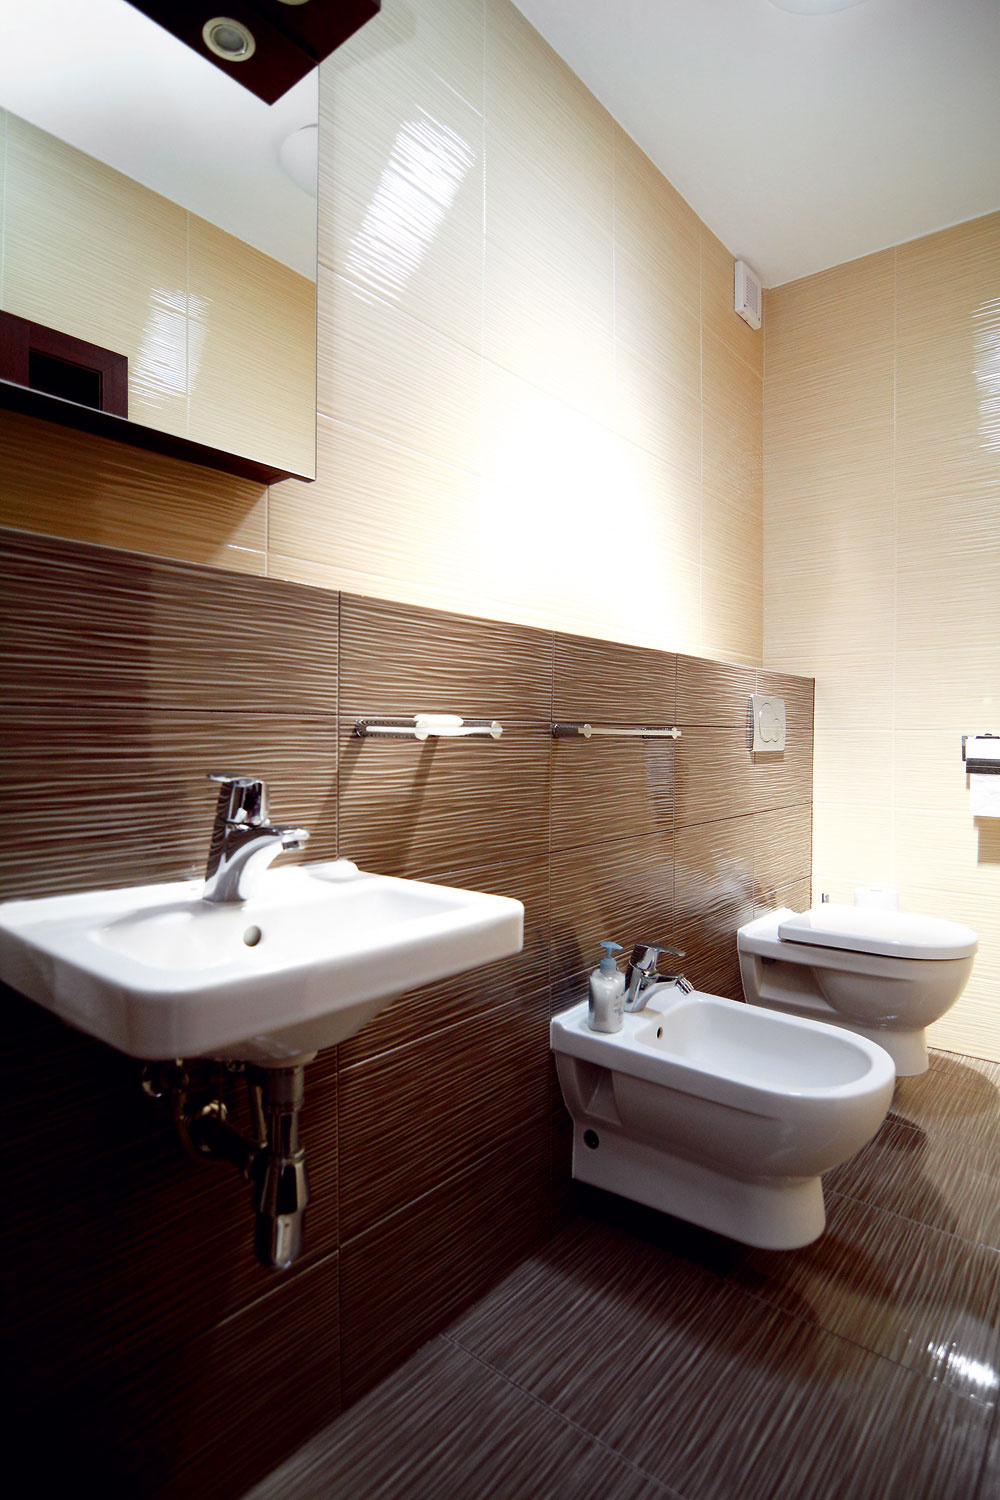 Obe kúpeľne sú zariadené striedmo a elegantne.